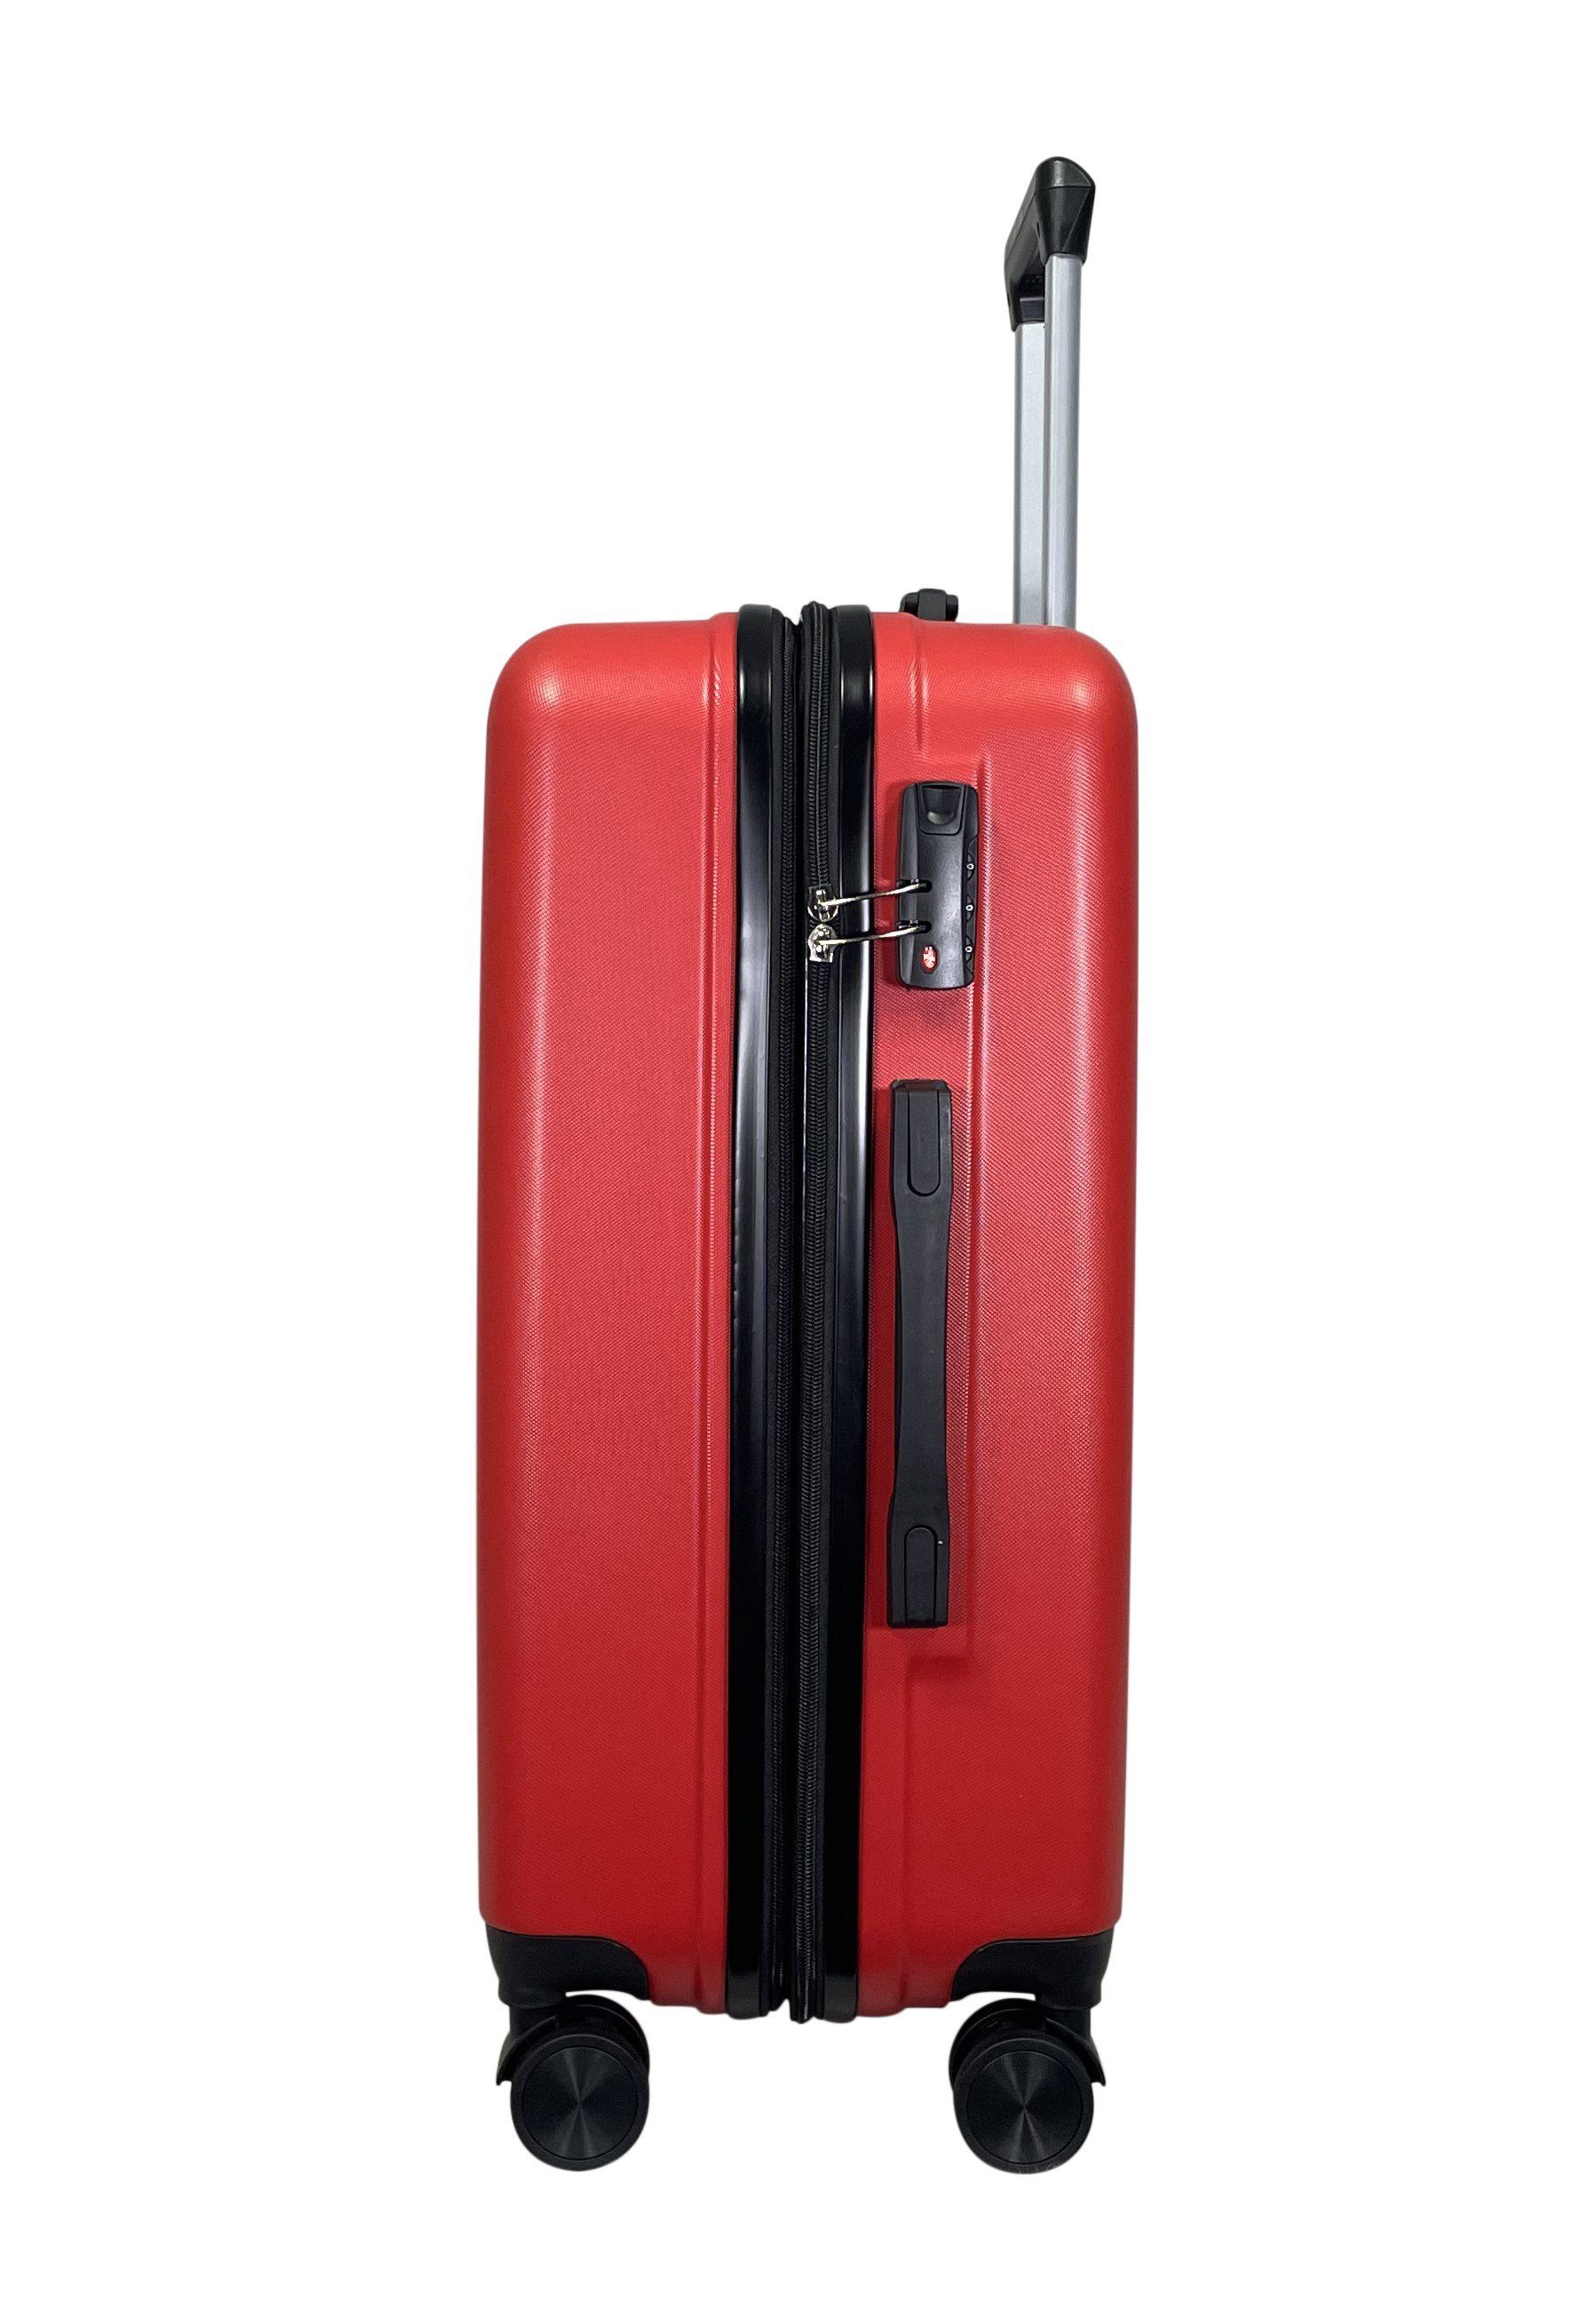 Hartschalen Reisekoffer Koffer MTB ABS (Handgepäck-Mittel-Groß-Set) Rot erweiterbar